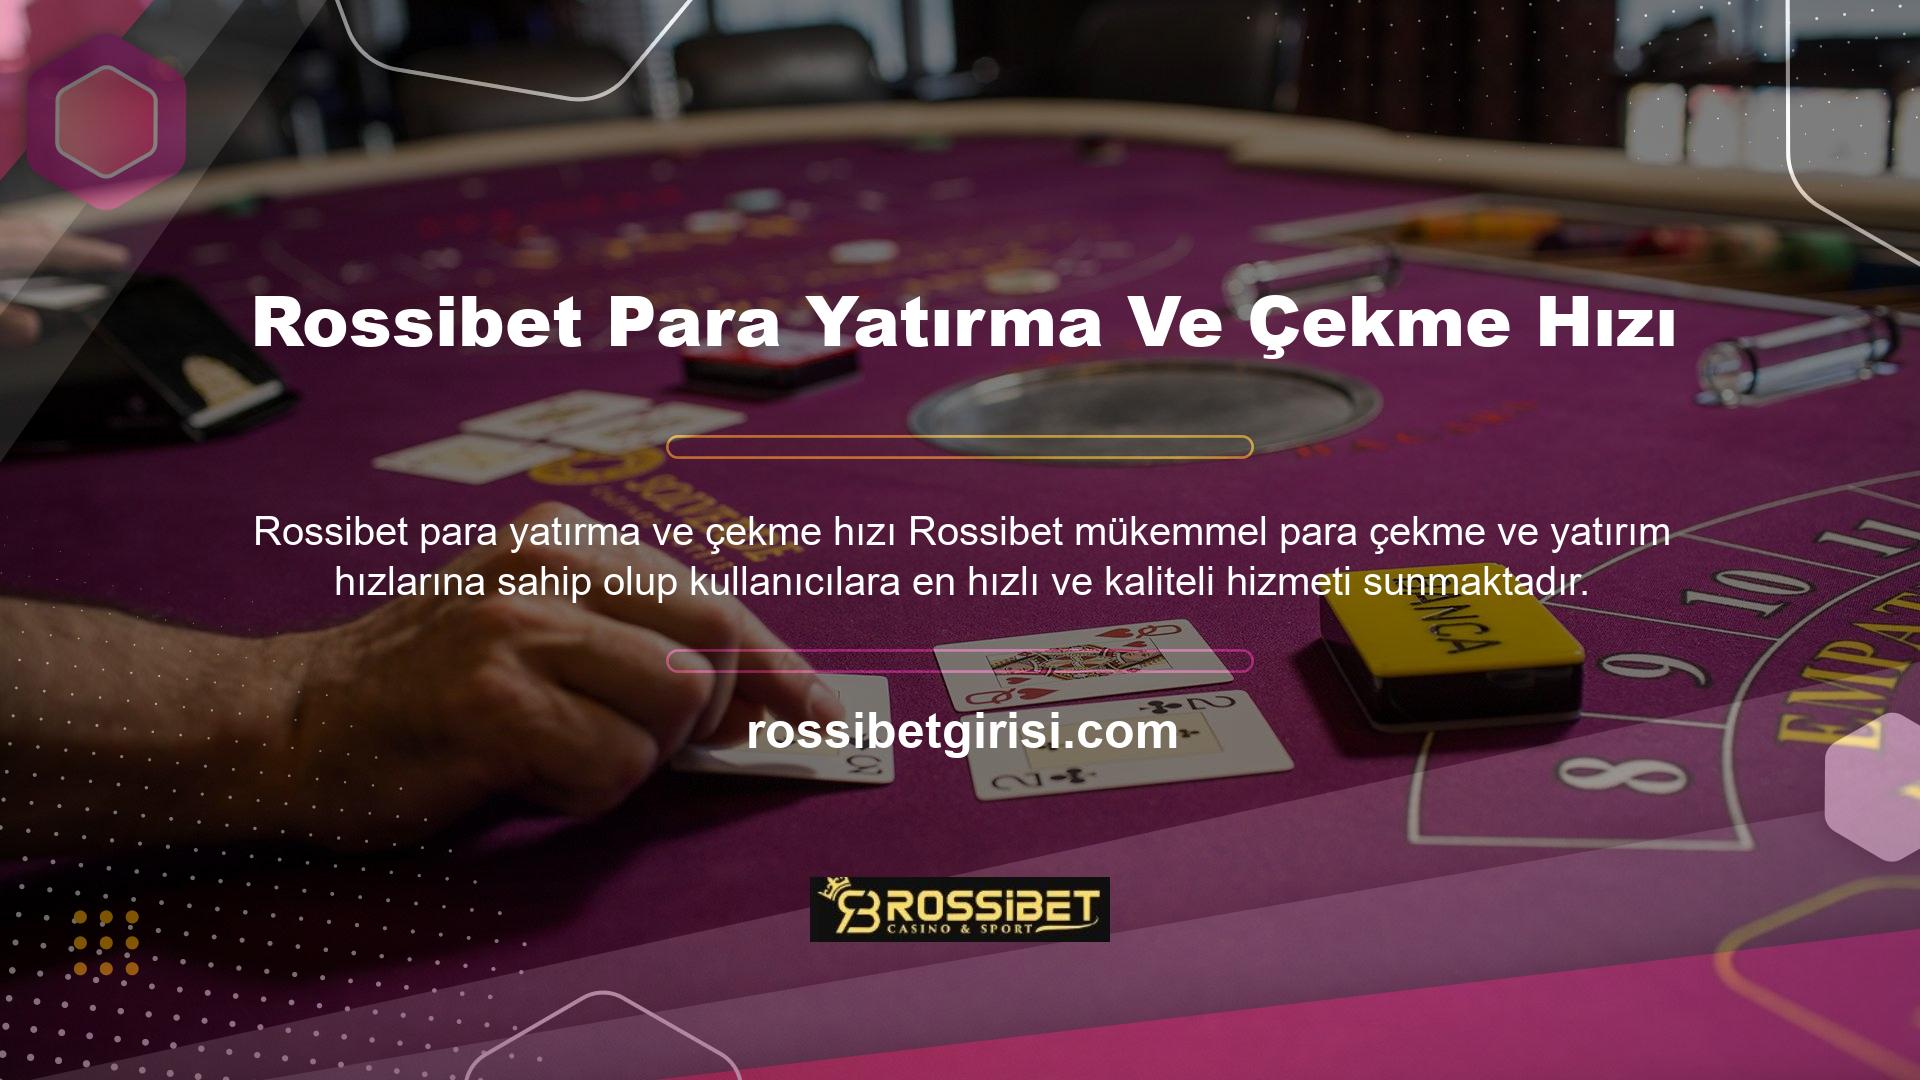 Yatırım süreci anlık olmakla birlikte, para çekme işlemi de Rossibet para yatırma ve çekme işlemi kadar hızlıdır